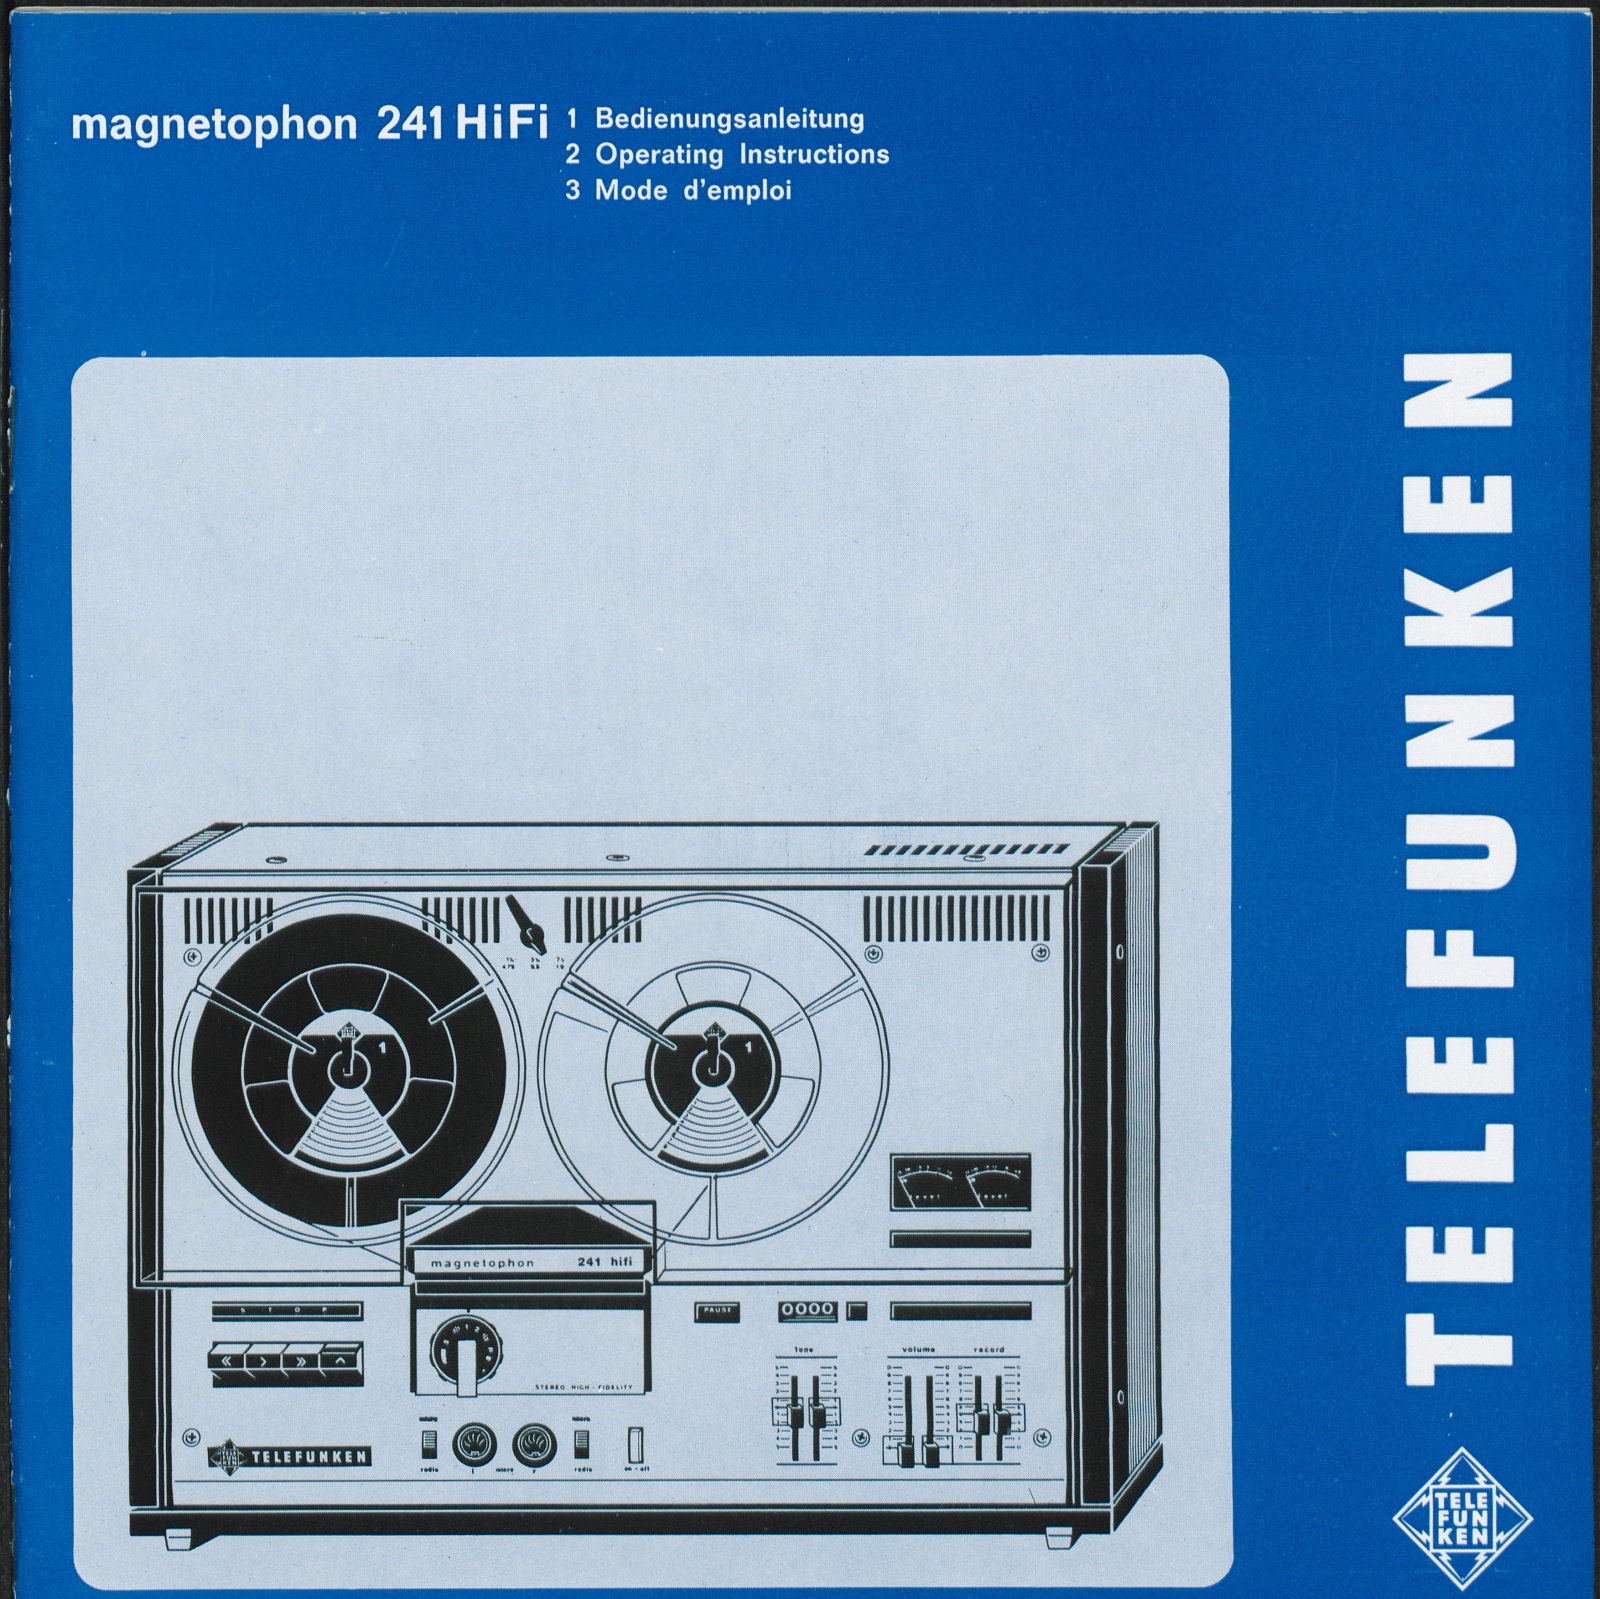 Bedienungsanleitung: Bedienungsanleitung Telefunken magnetophon 241 HiFi (Stiftung Deutsches Technikmuseum Berlin CC0)